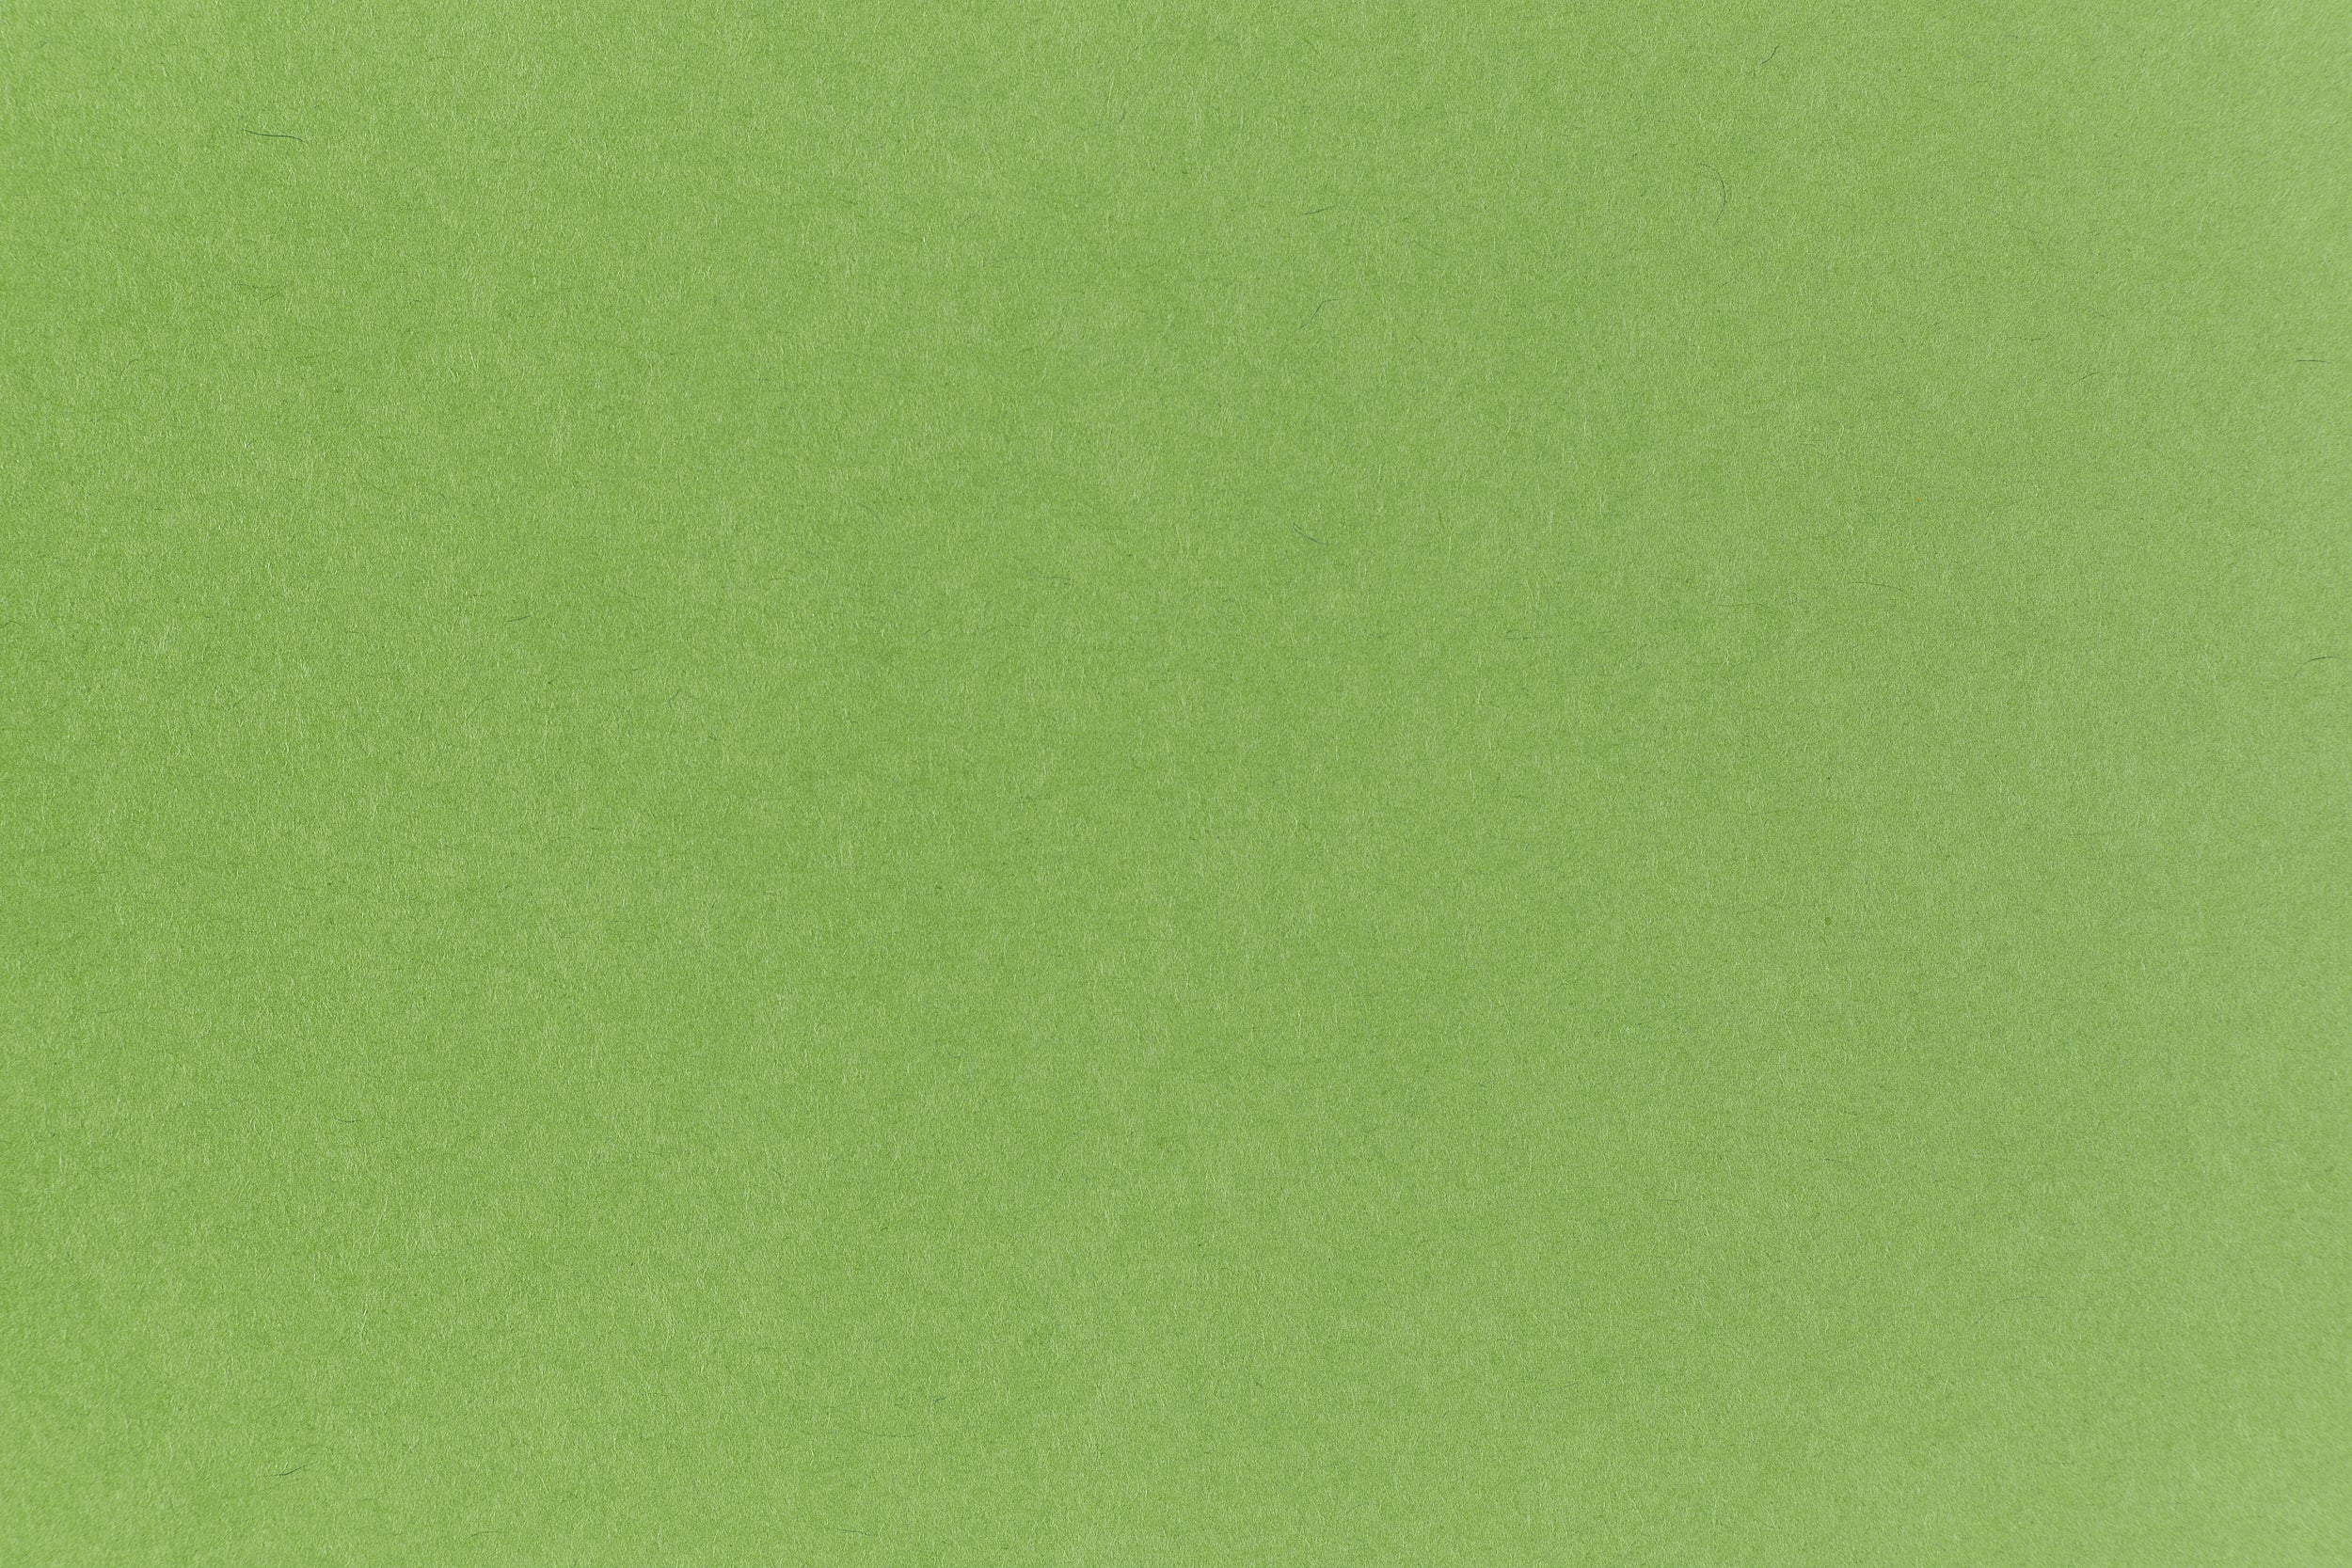 Gumdrop Green Paper (Pop-Tone, Text Weight)